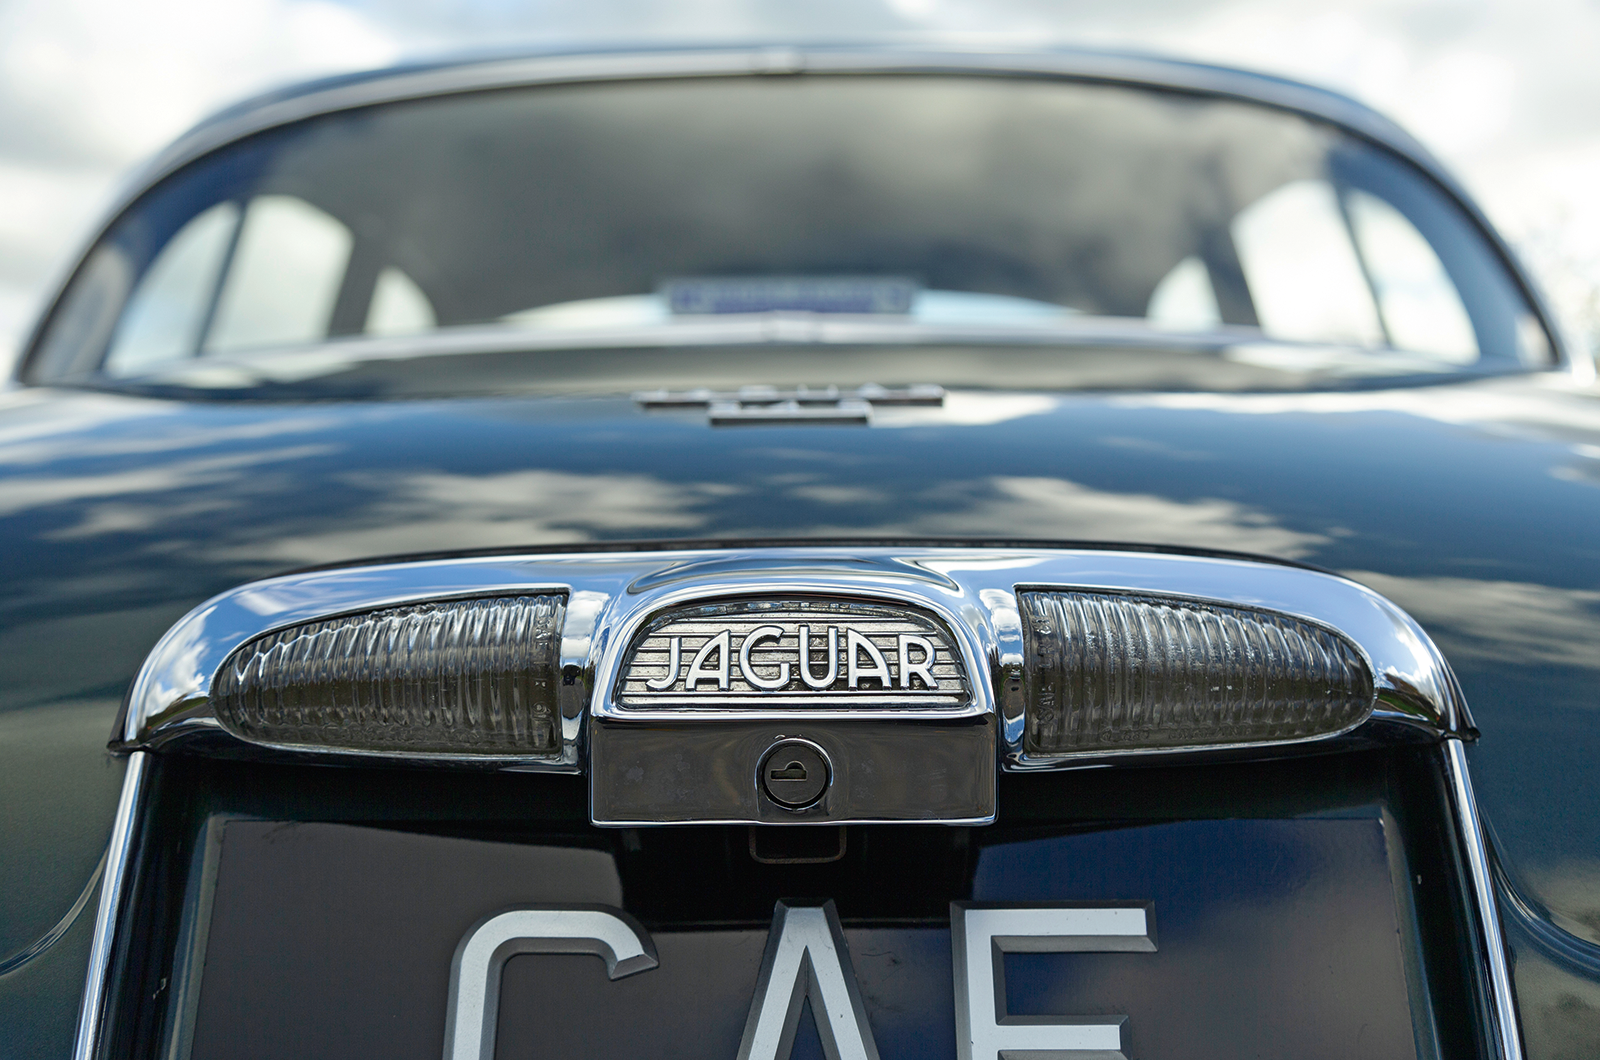 Classic & Sports Car – Jaguar S-type 3.4 vs Vanden Plas 4 litre R: meeting in the middle